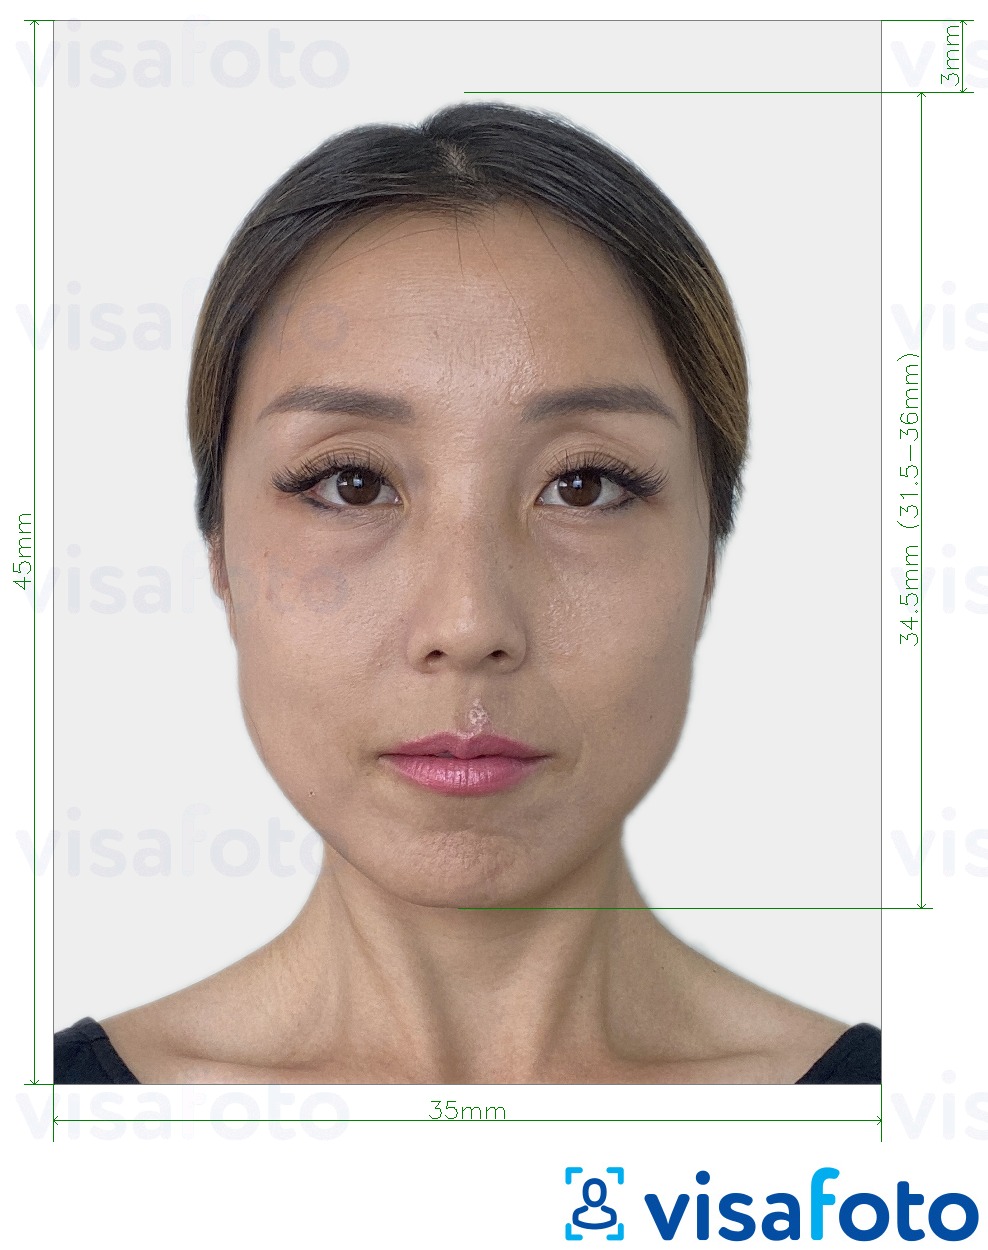 Voorbeeld van foto voor Zuid-Korea Visa 35x45 mm (3,5x4,5 cm) met exacte maatspecificatie